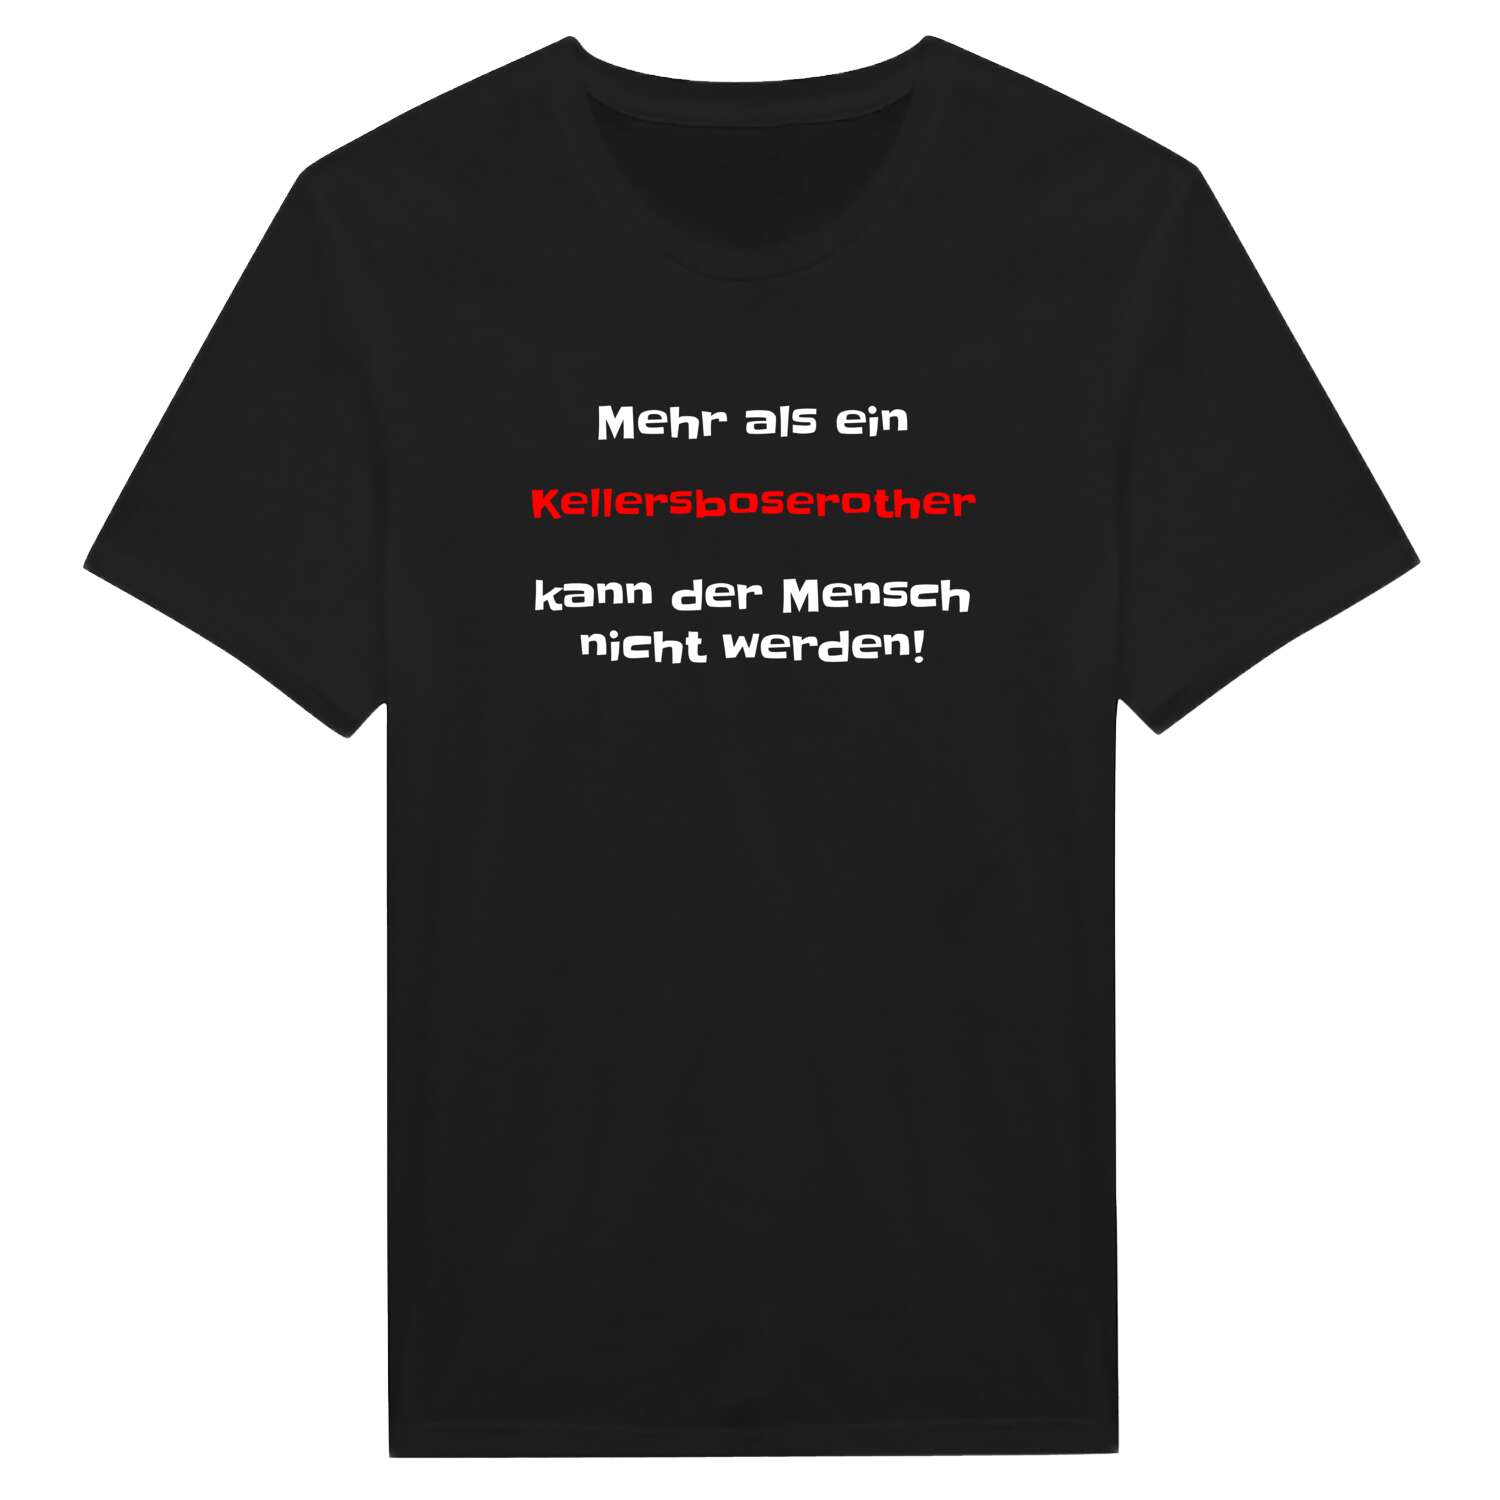 Kellersboseroth T-Shirt »Mehr als ein«